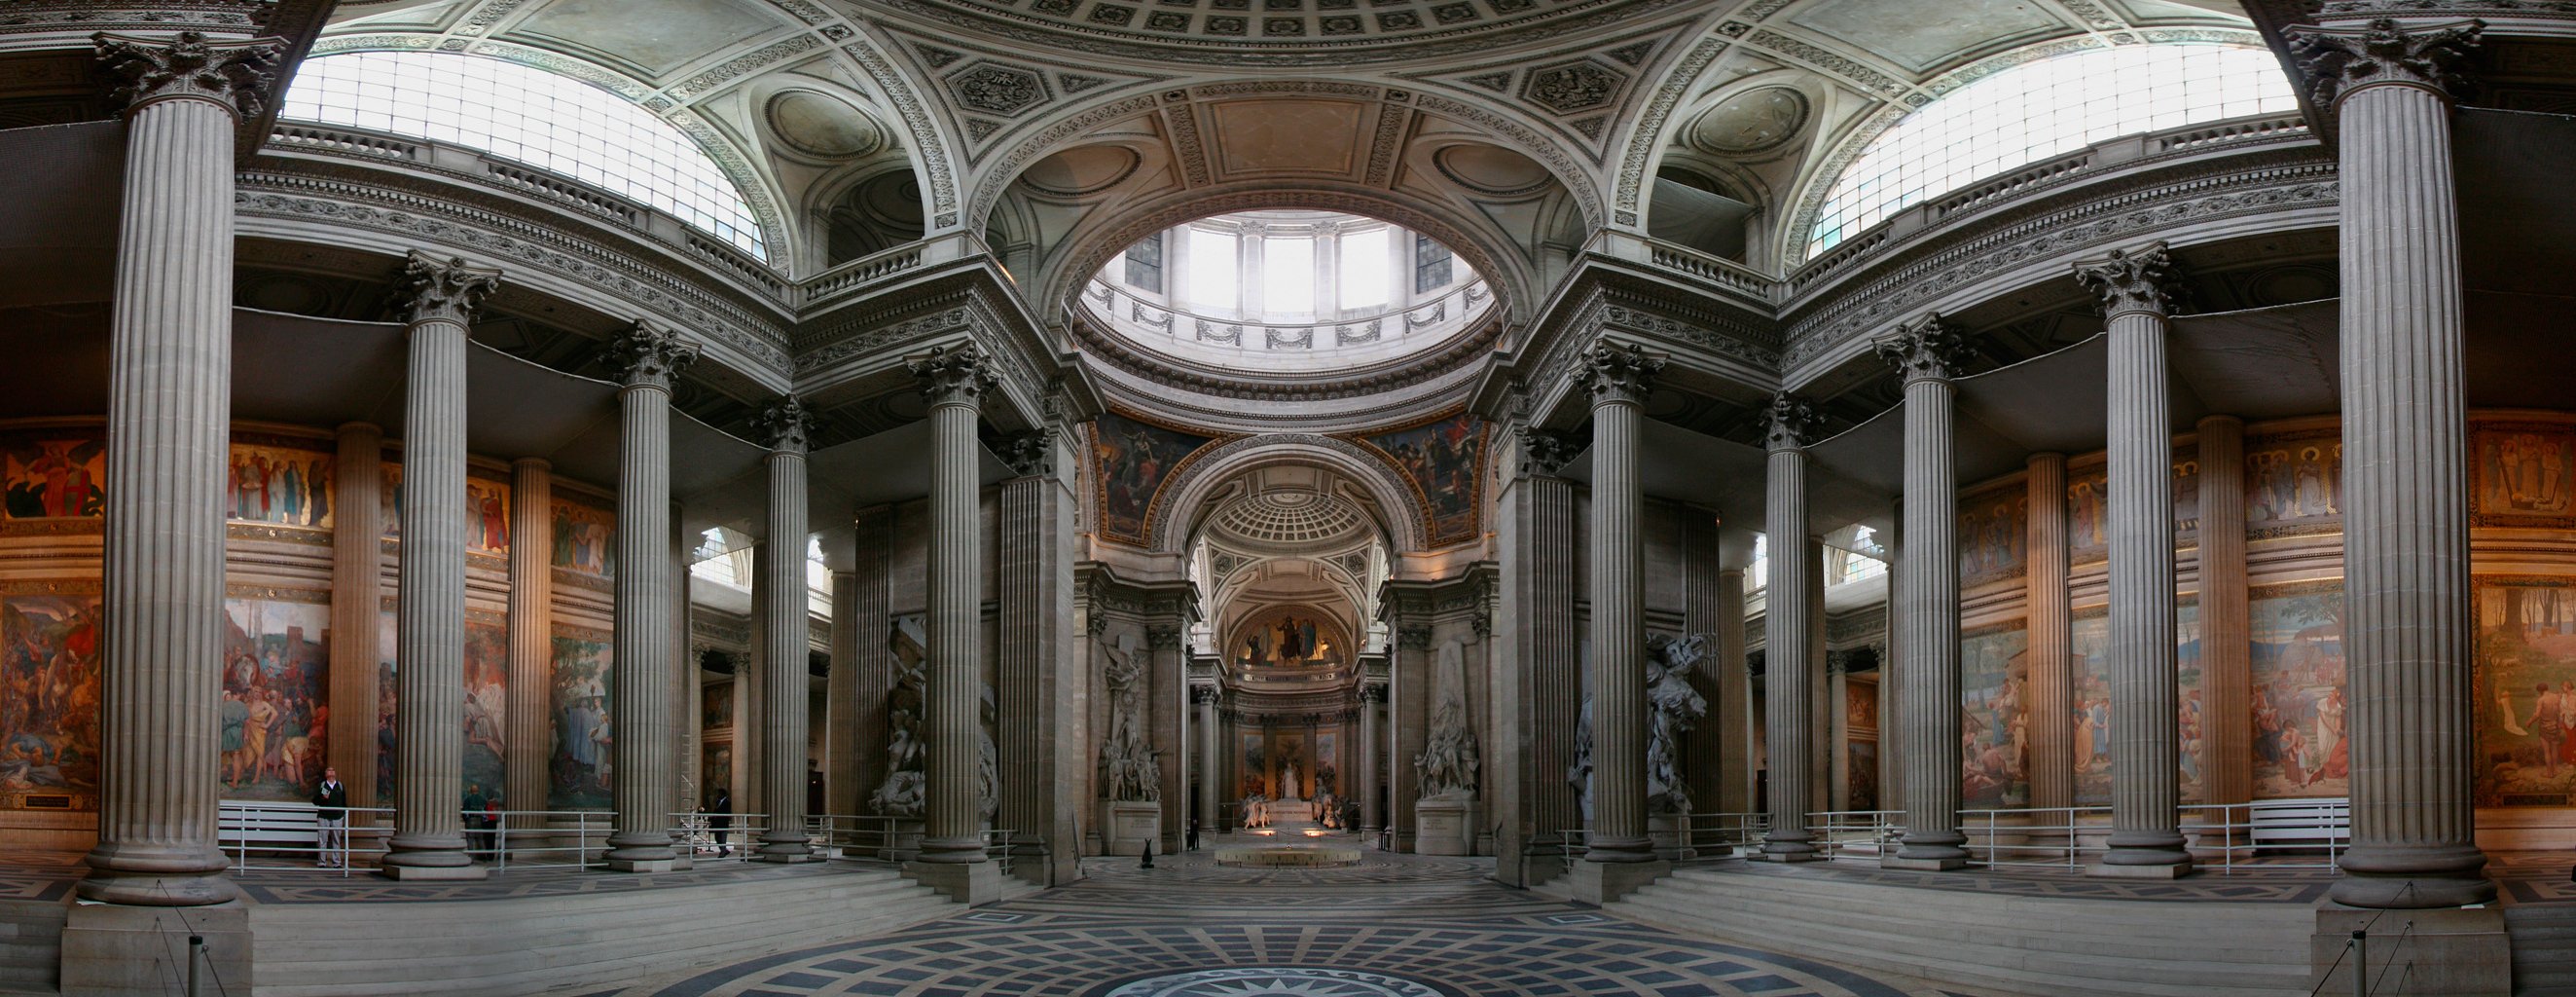 Pantheon paris panoramique